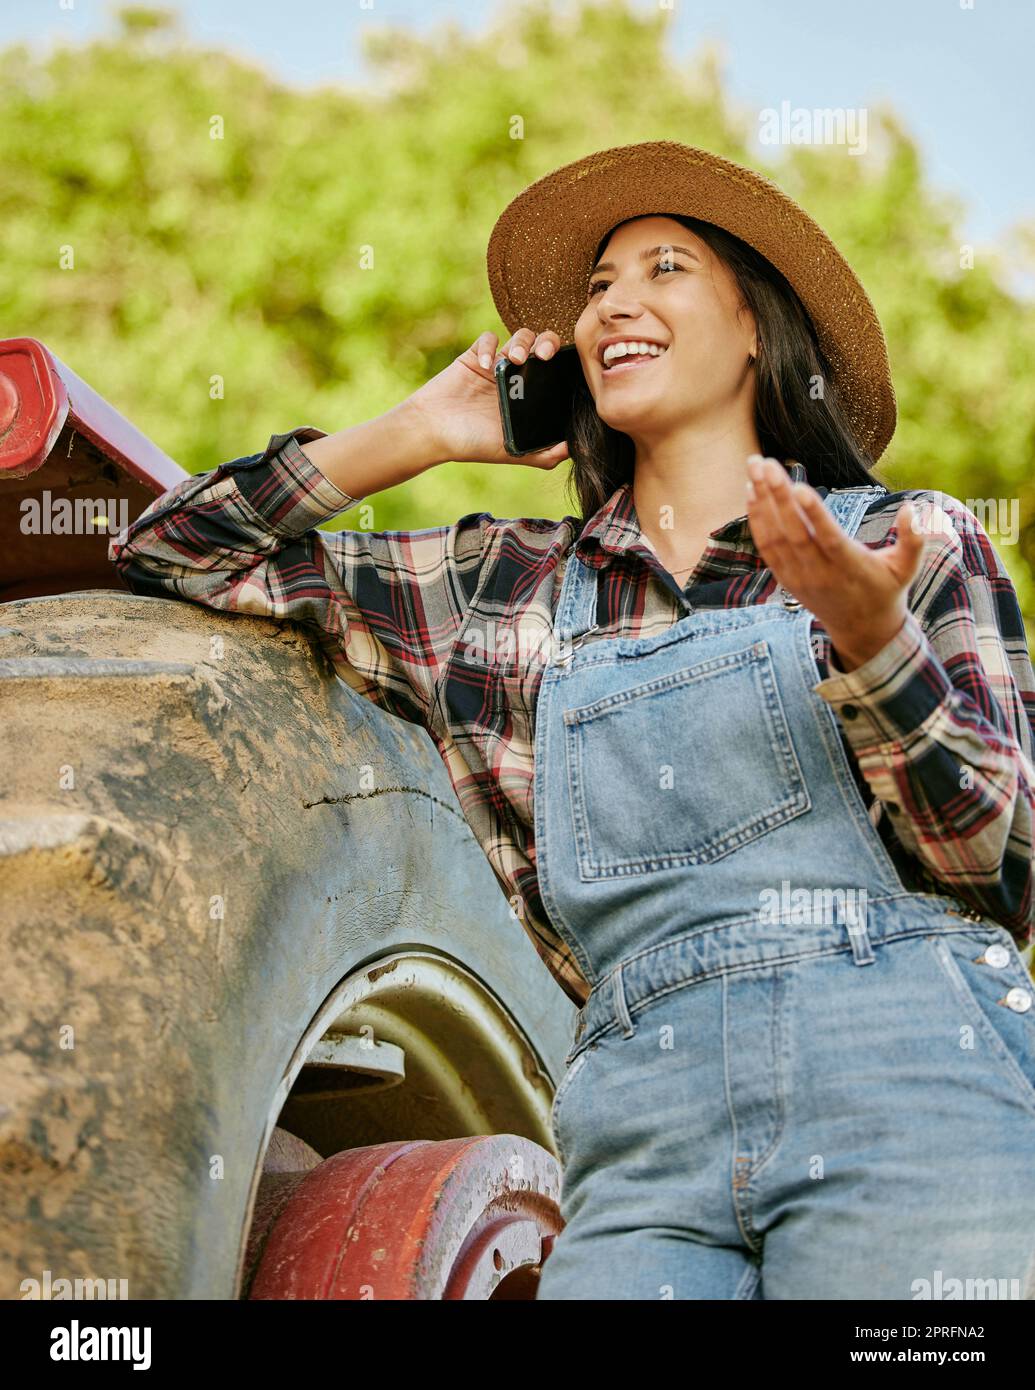 Landwirtschaft, Nachhaltigkeit und Landwirt, der telefoniert, während er auf einem Hof mit einem Traktor arbeitet. Wellness, Gesundheit und Agrofrau vernetzen sich mit einem mobilen Gerät, während sie auf dem Land stehen. Stockfoto